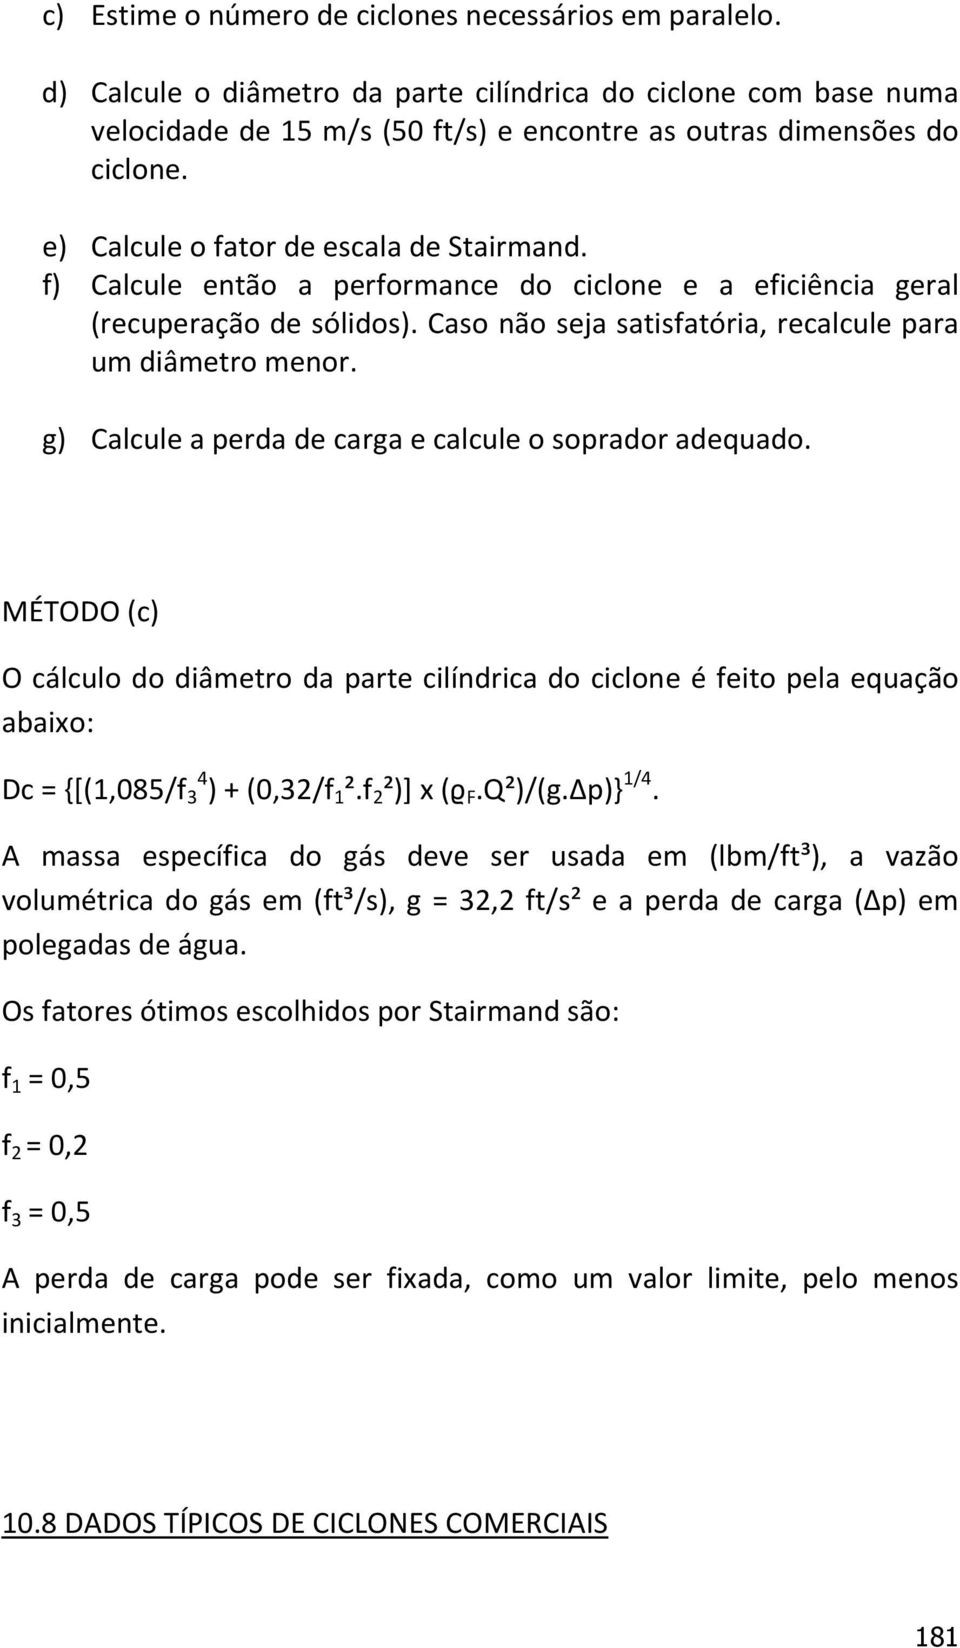 g) Calcule a perda de carga e calcule o soprador adequado. MÉTODO (c) O cálculo do diâmetro da parte cilíndrica do ciclone é feito pela equação abaixo: Dc = {[(1,085/f 3 4 ) + (0,32/f 1 ².